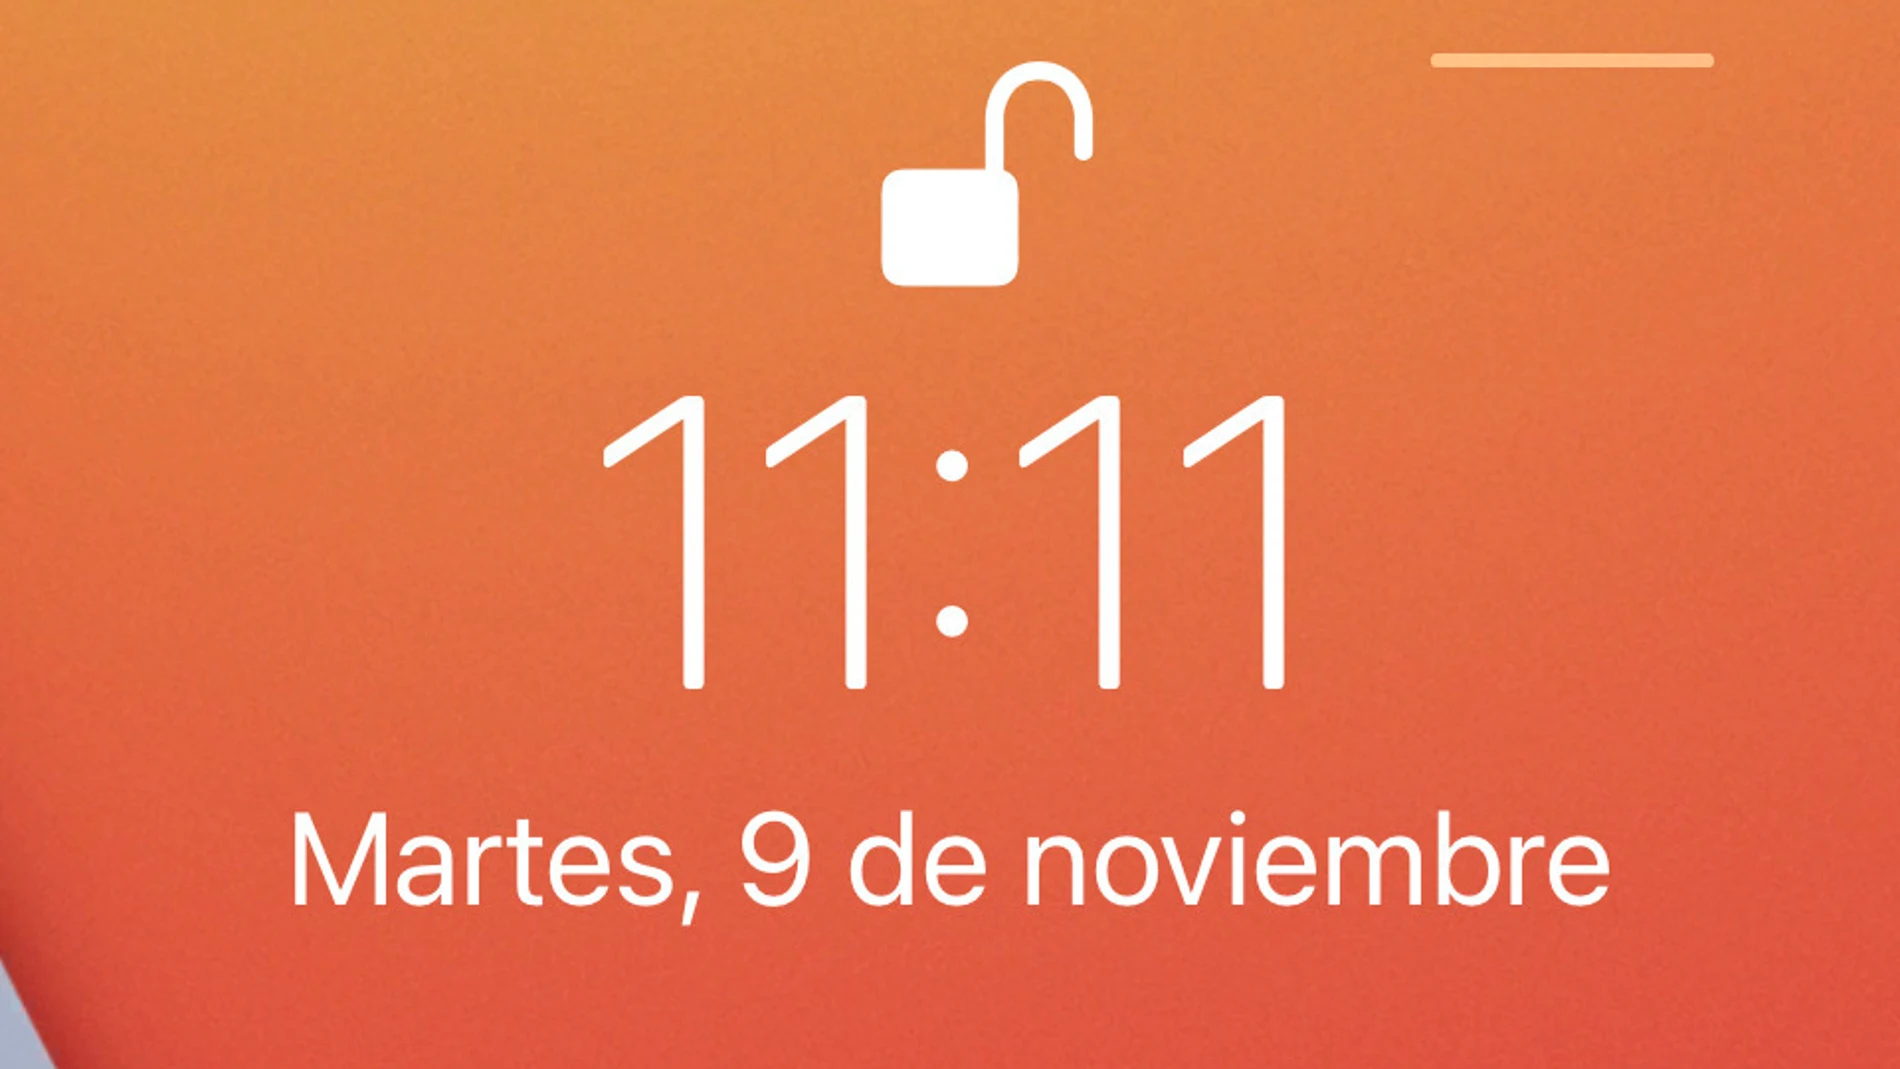 El 11:11 es un número que para muchos es señal de buena suerte pero para otros es la puerta a otros mundos o, incluso, a la muerte